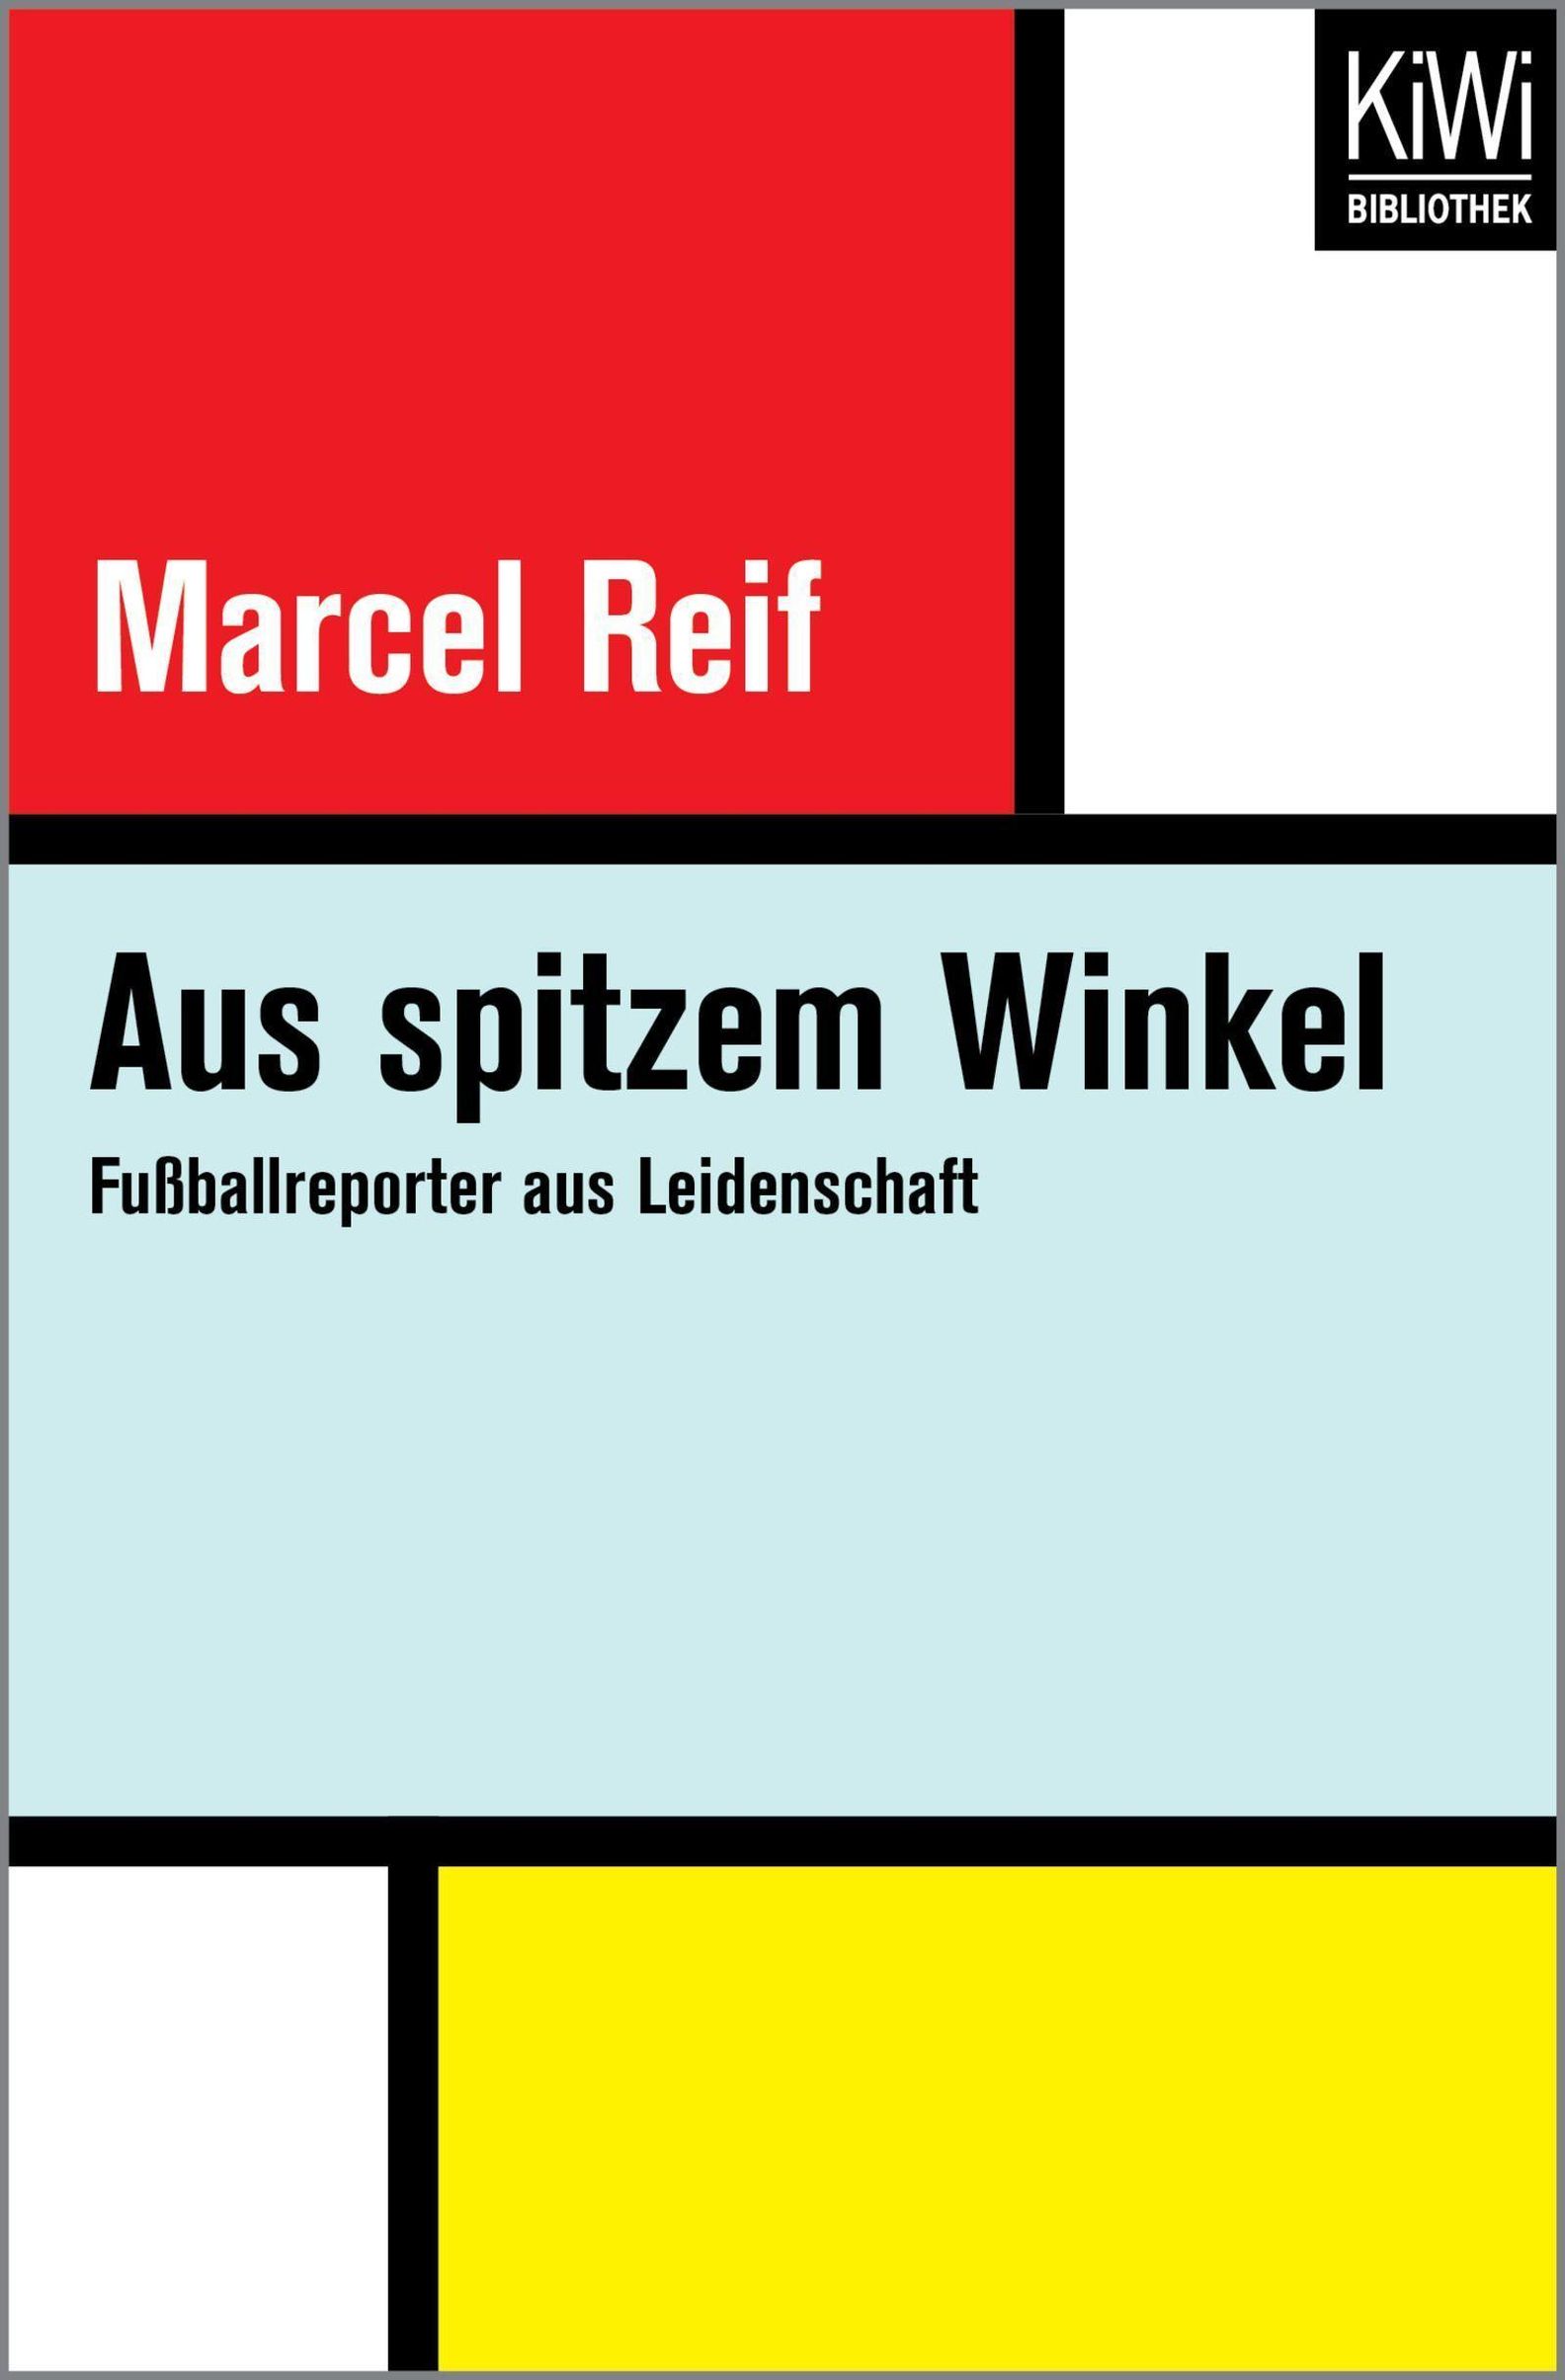 Aus spitzem Winkel Buch von Marcel Reif versandkostenfrei bei Weltbild.ch